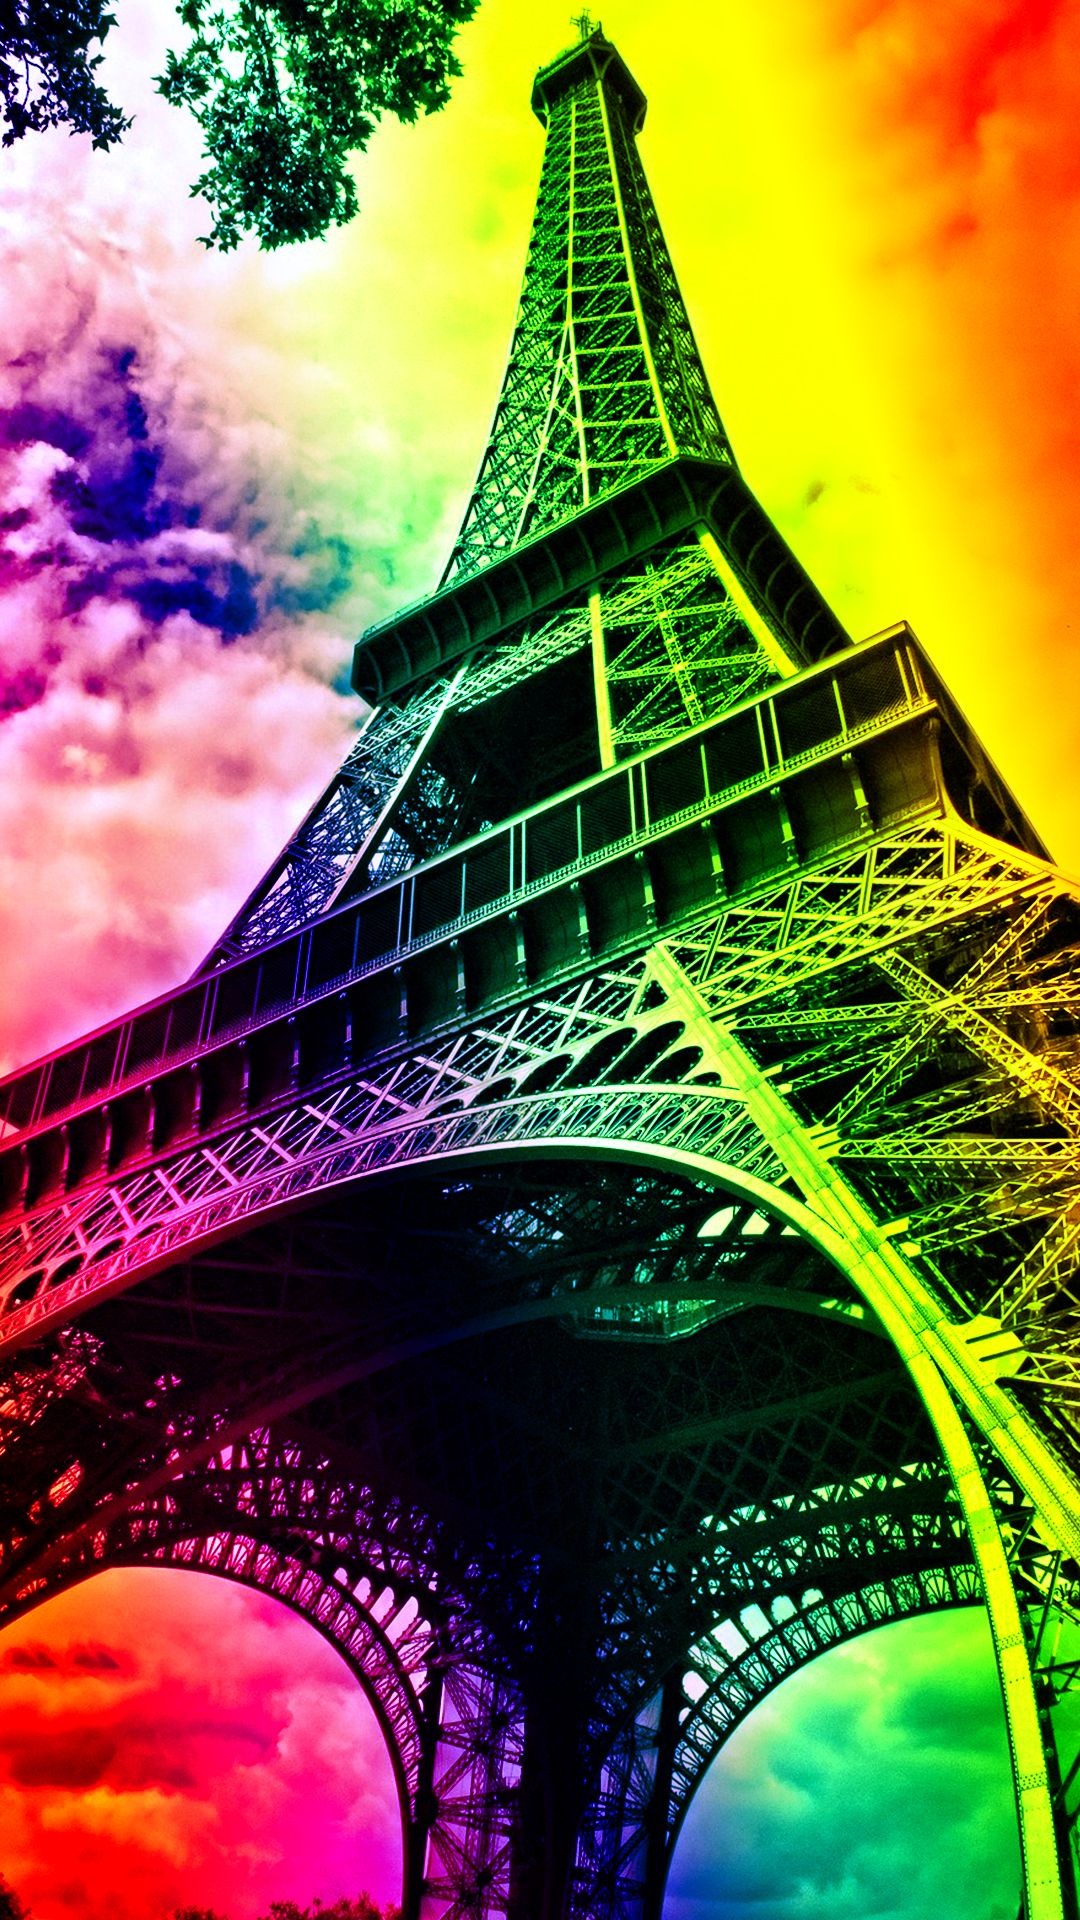 Fondos de la Torre Eiffel - Los mejores fondos de la Torre Eiffel gratis